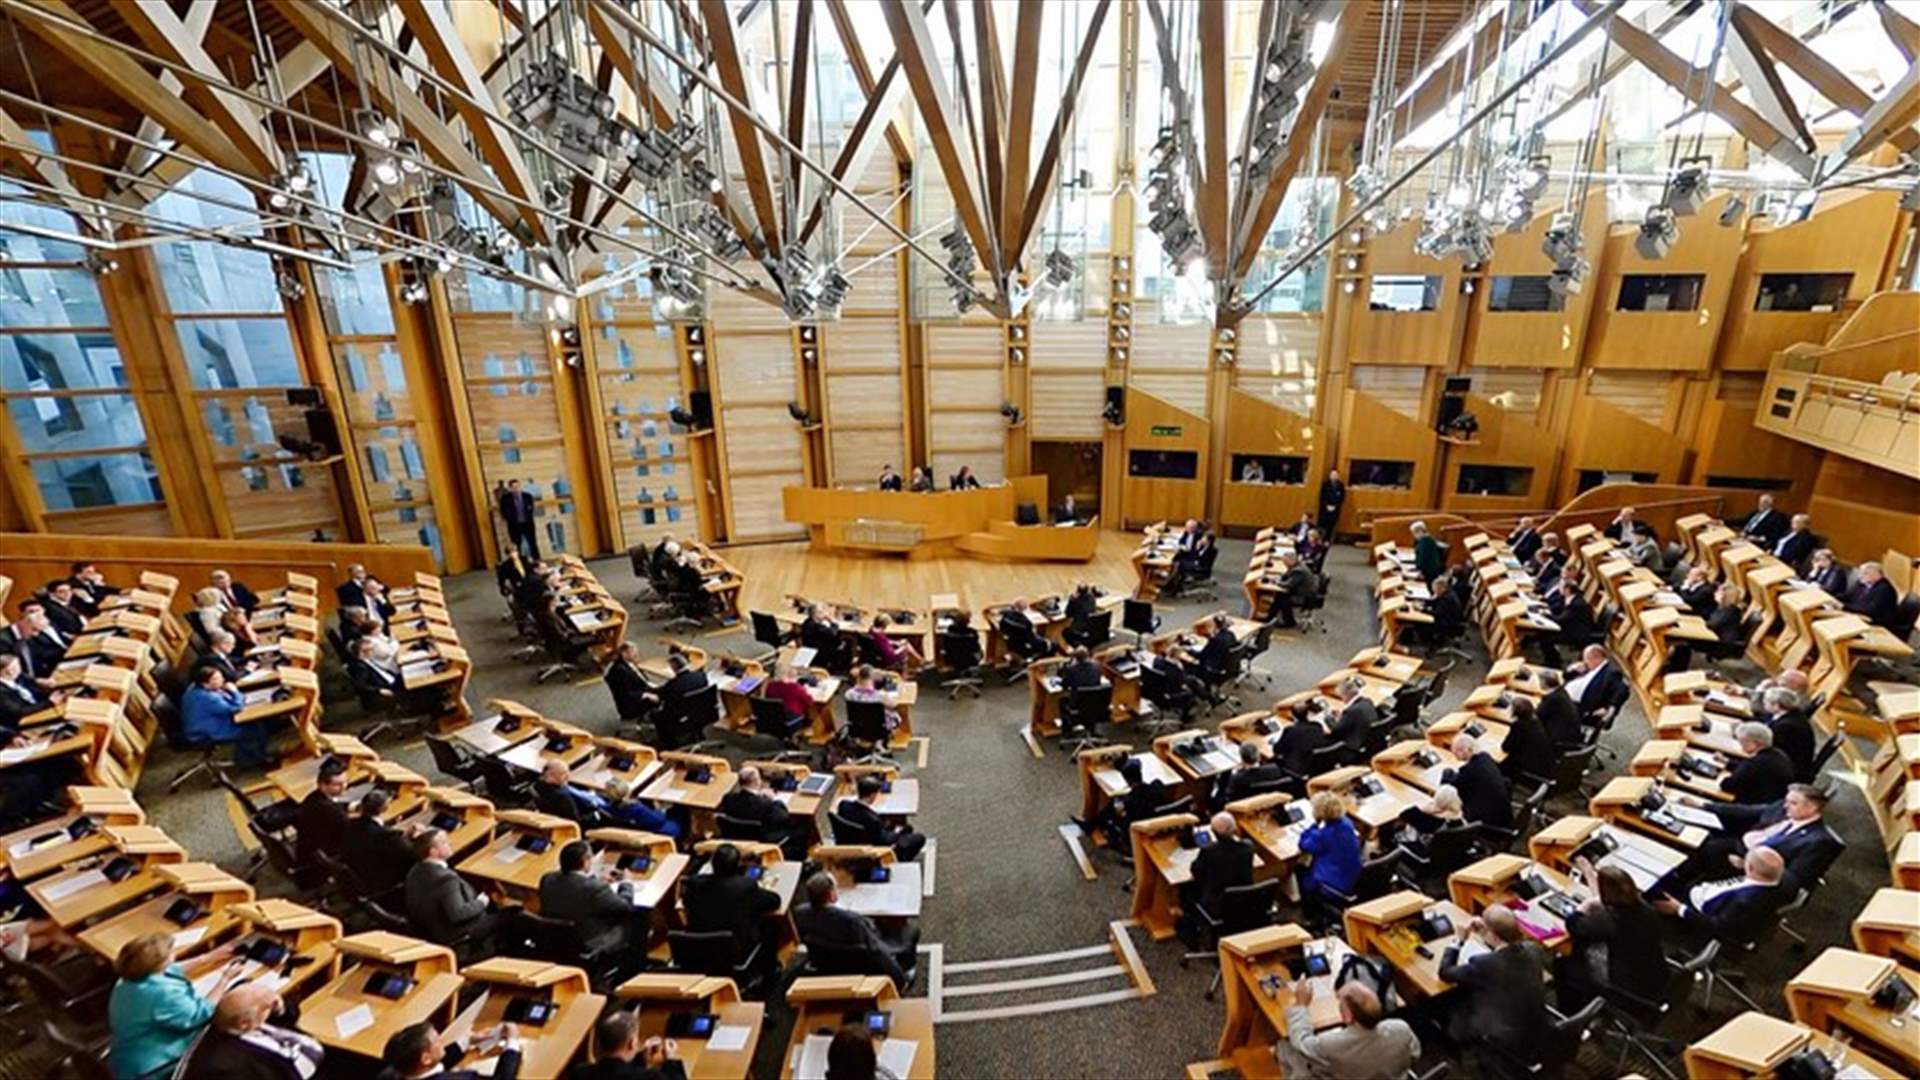 البرلمان الاسكتلندي يؤيد إجراء استفتاء جديد على الاستقلال